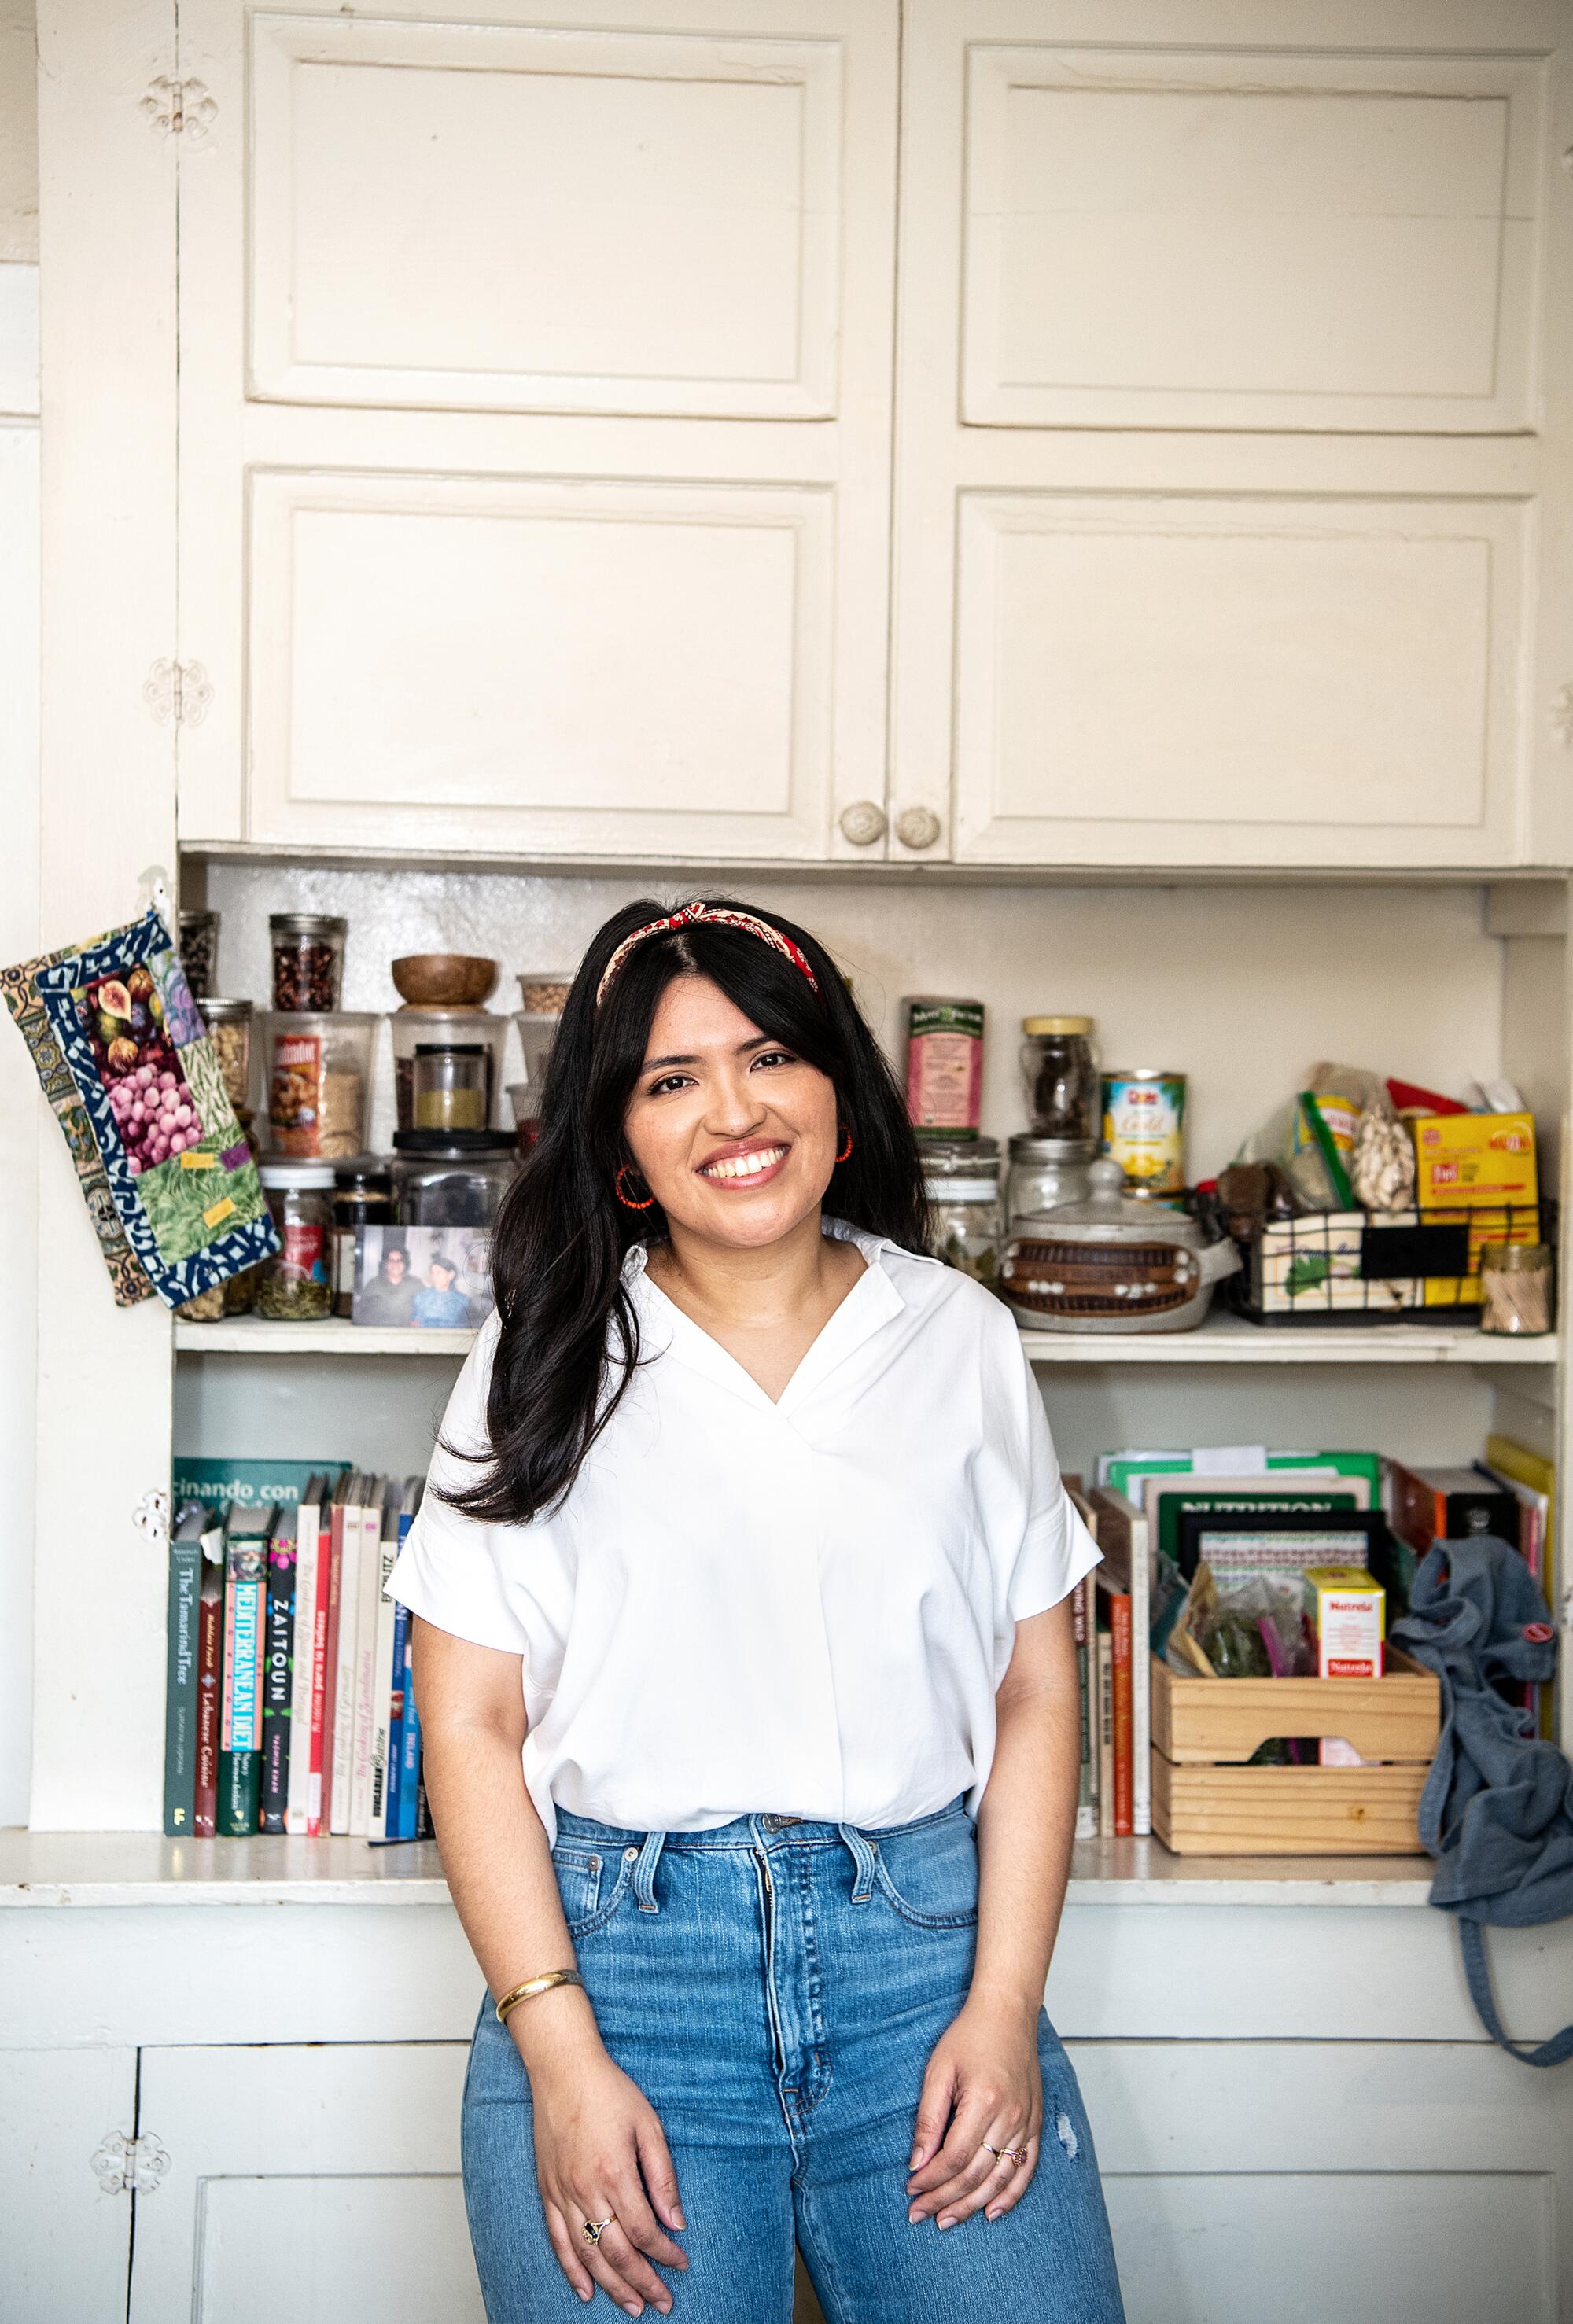   Die Food-Autorin und Online-Kochlehrerin Karla Vasquez in ihrer Küche